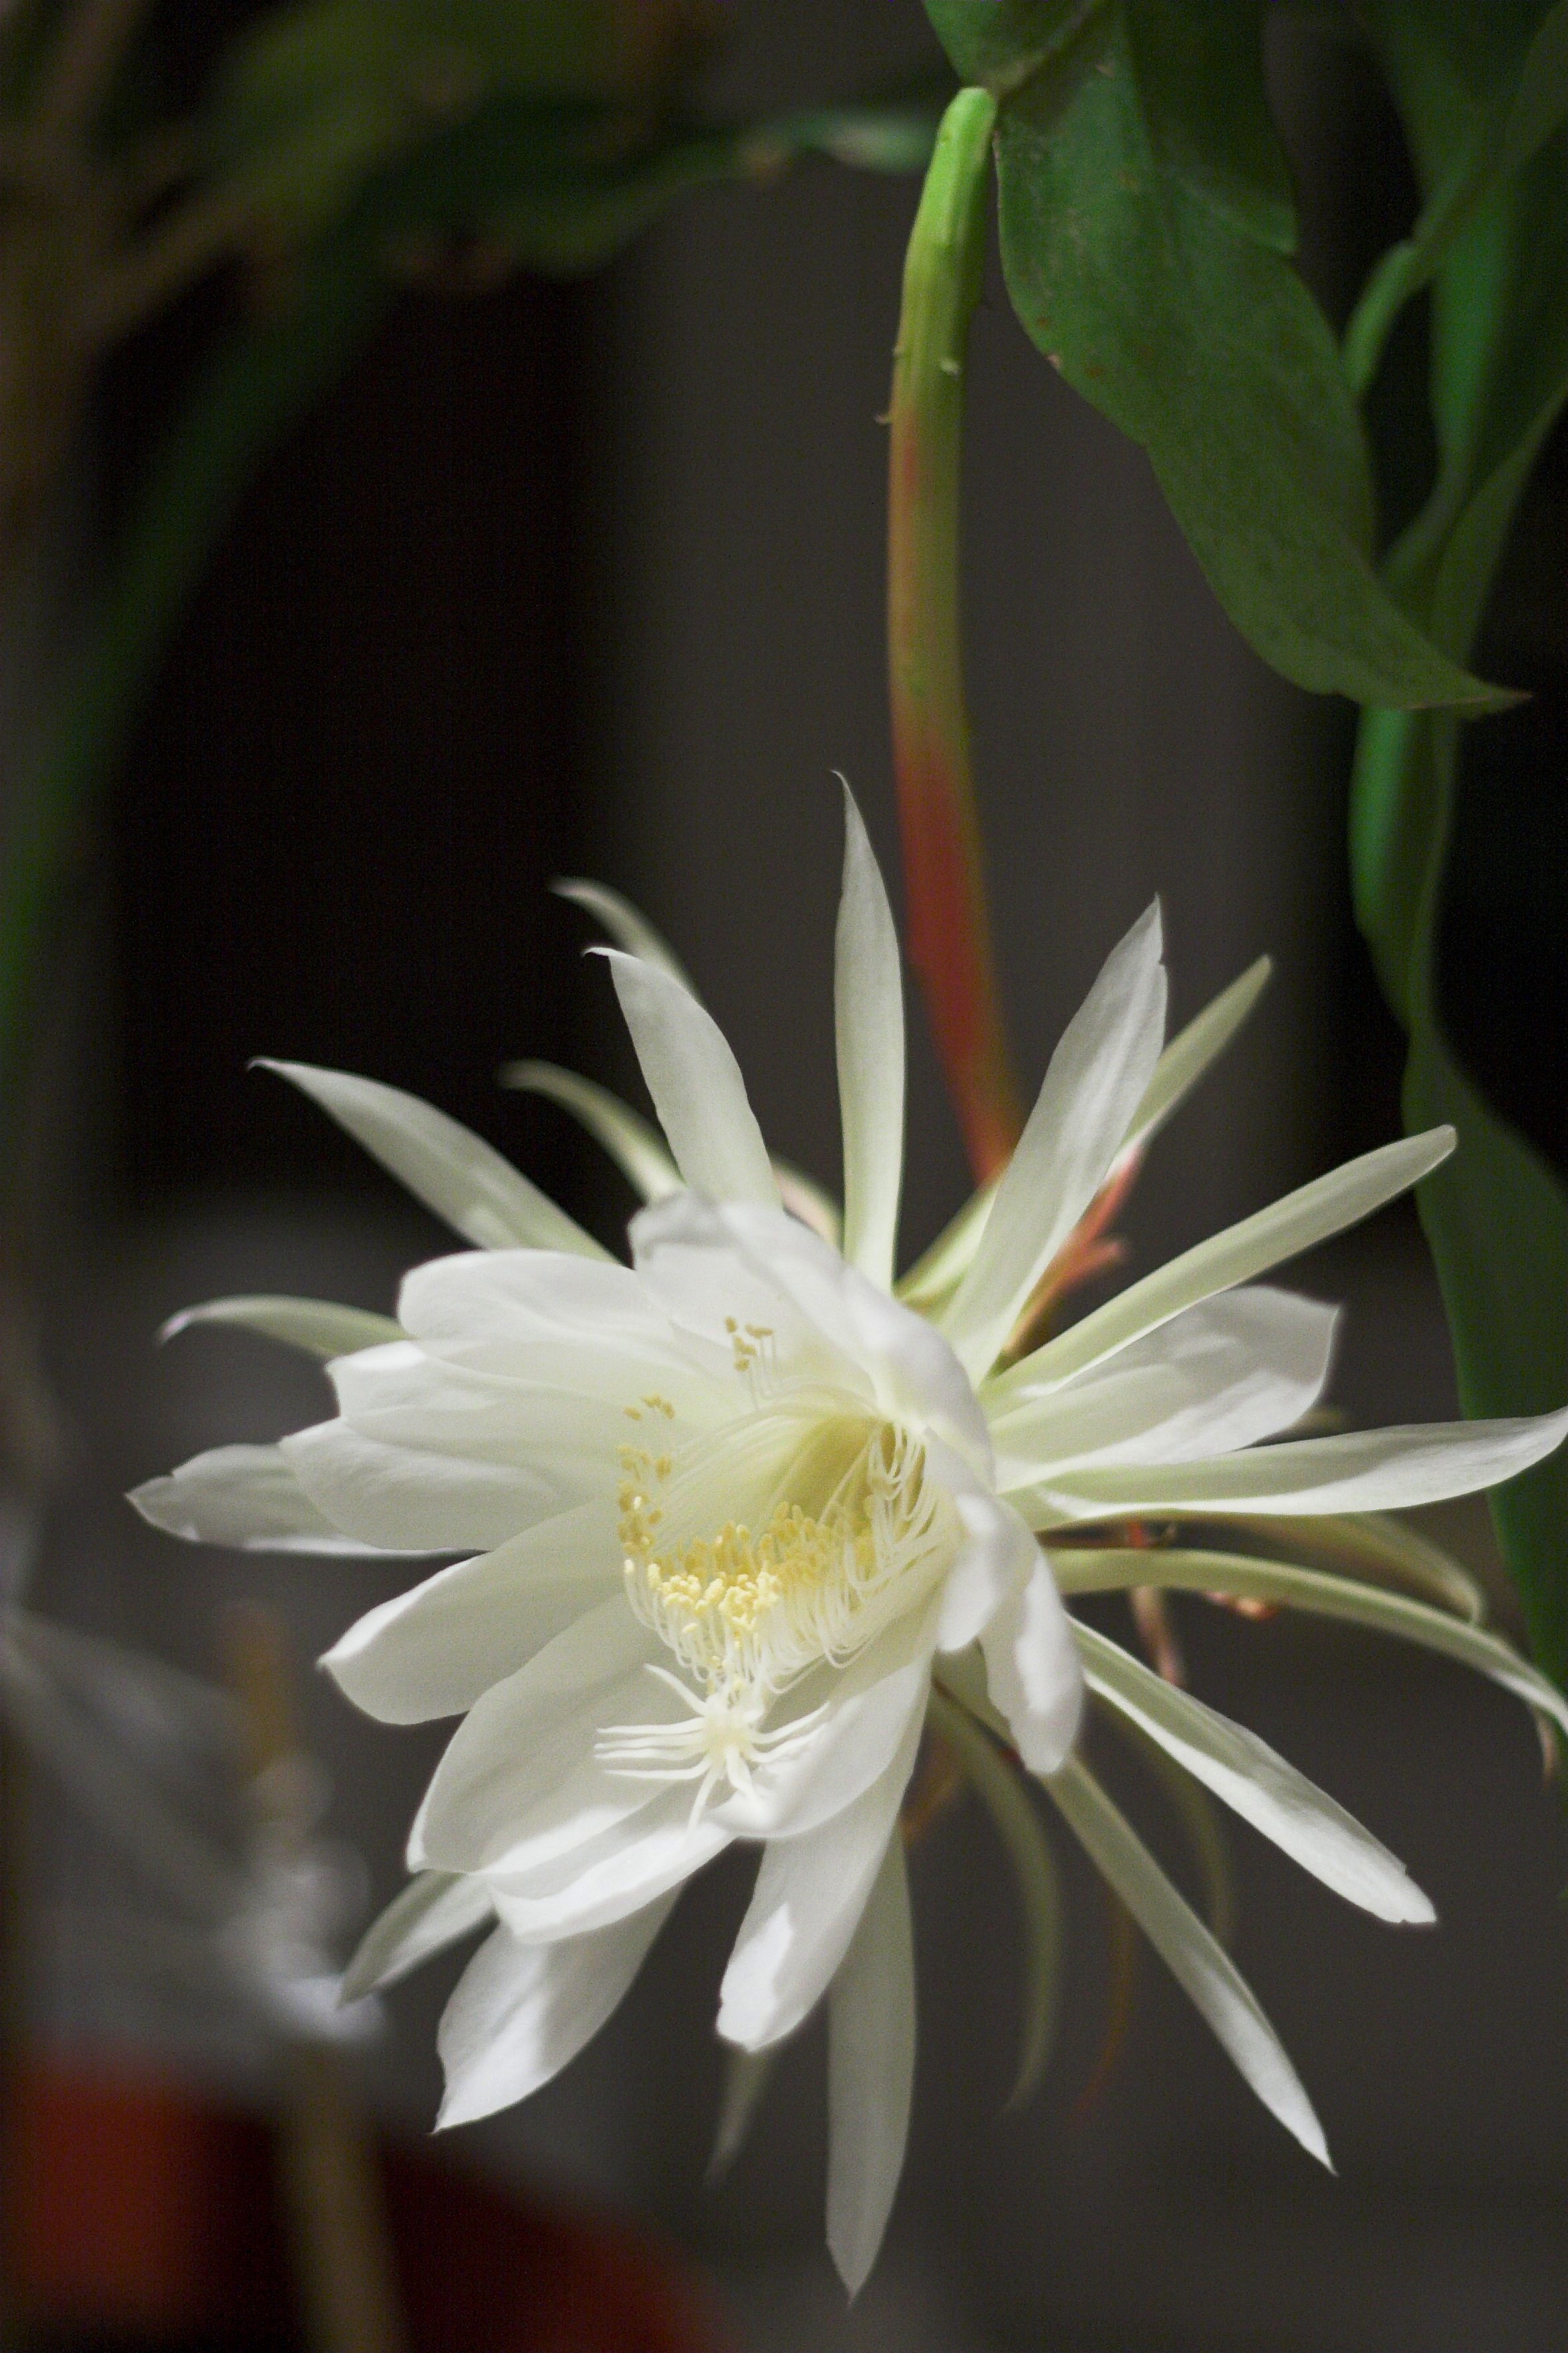 Epiphyllum oxypetalum (rights holder: Samuel Wong (wongsamuel))